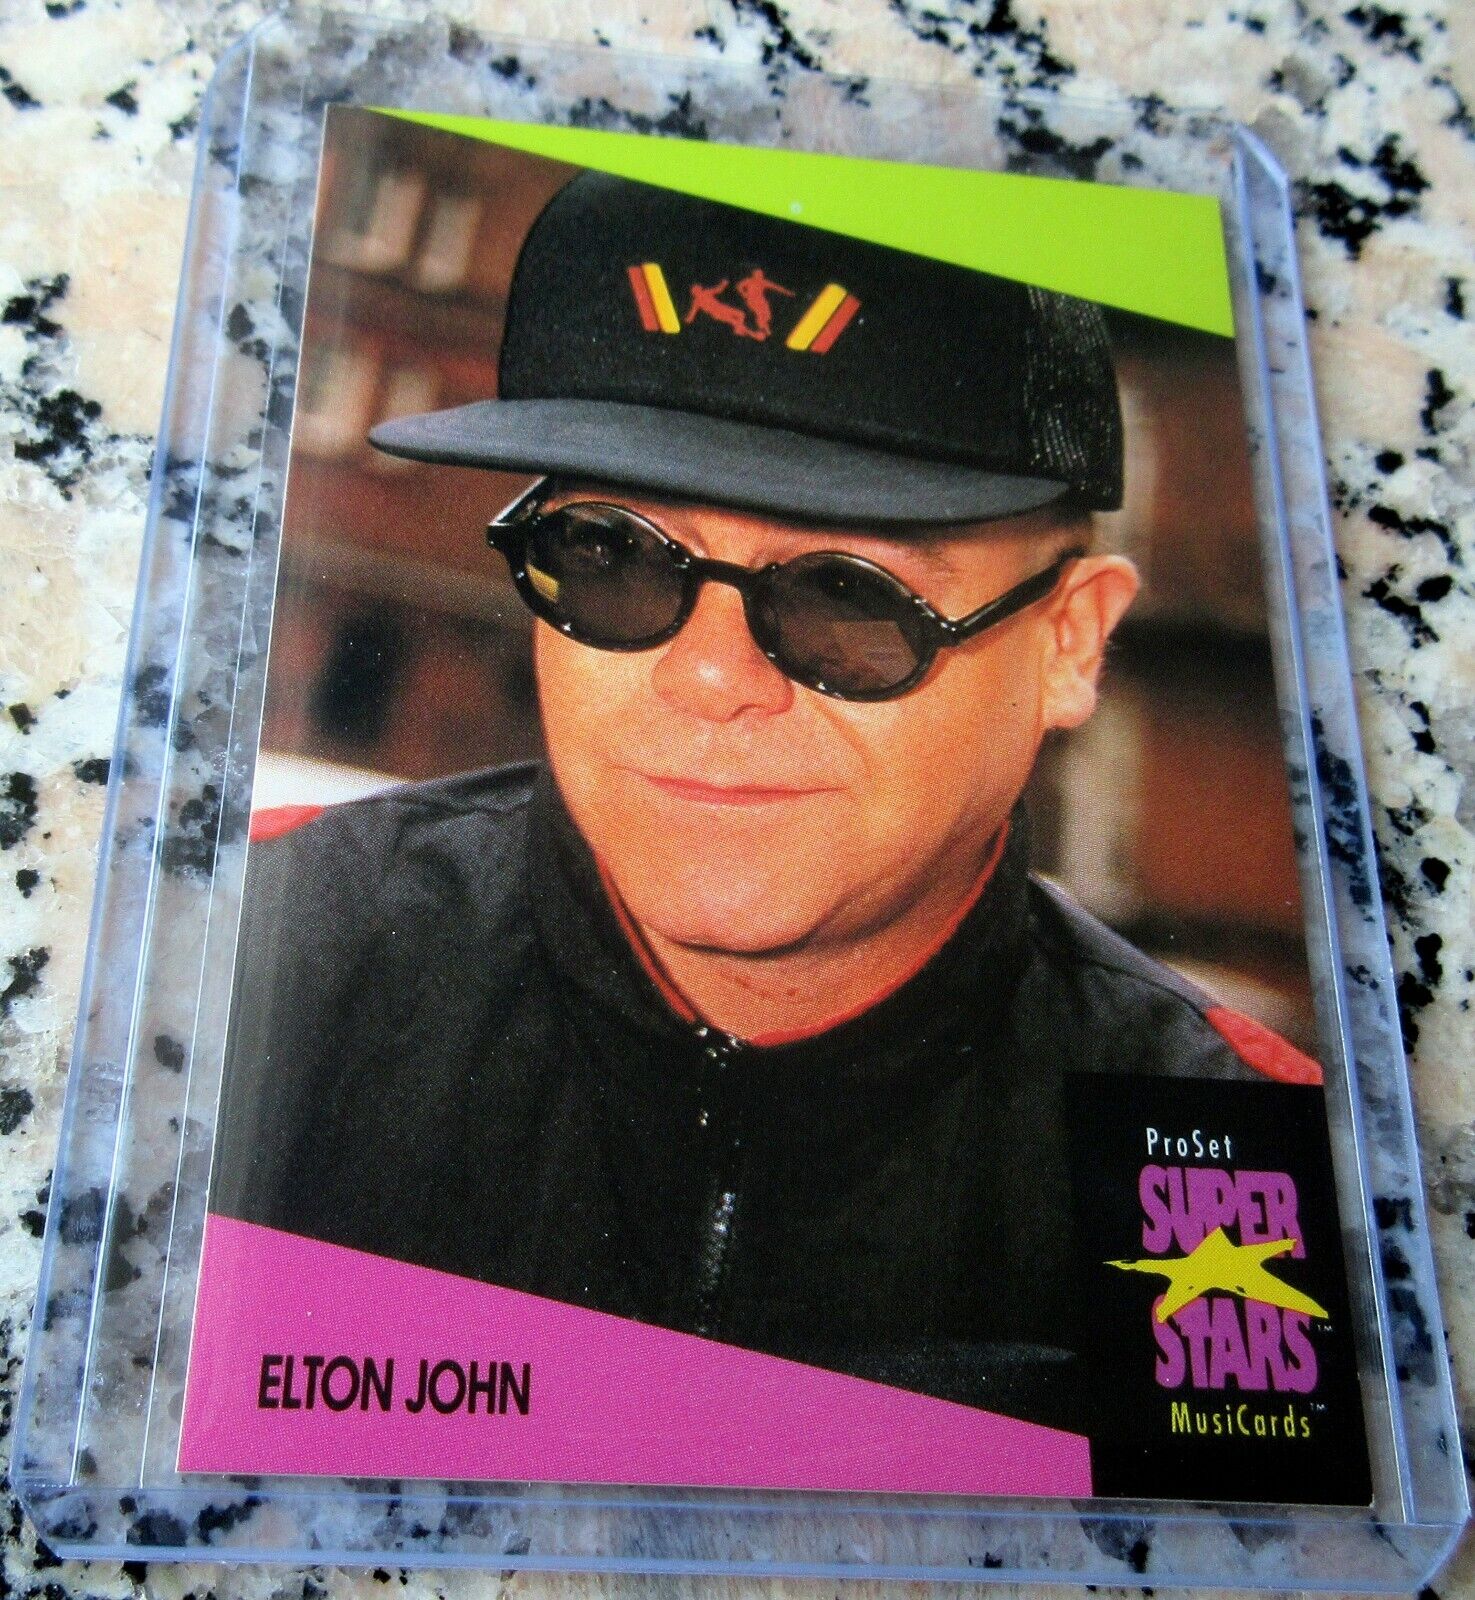 ELTON JOHN 1991 Pro Set RARE Music Card Rocket Man Your Song Daniel Blue Eyes $$